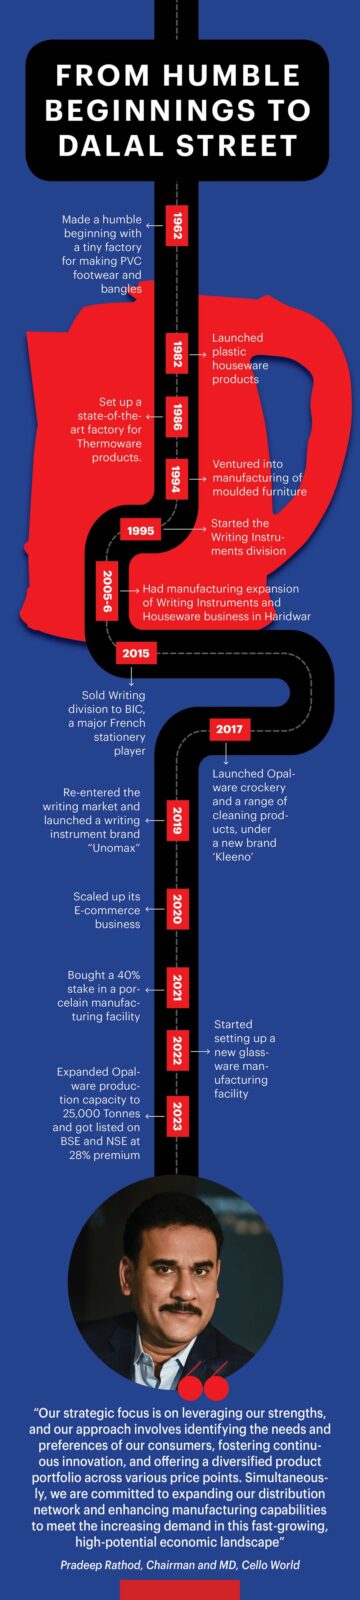 Infografik: Wie die vielfältigen Angebote dieser Marke den Weg für ihren Börsengang mit einem Preis von INR 1900 Cr ebneten | Unternehmer